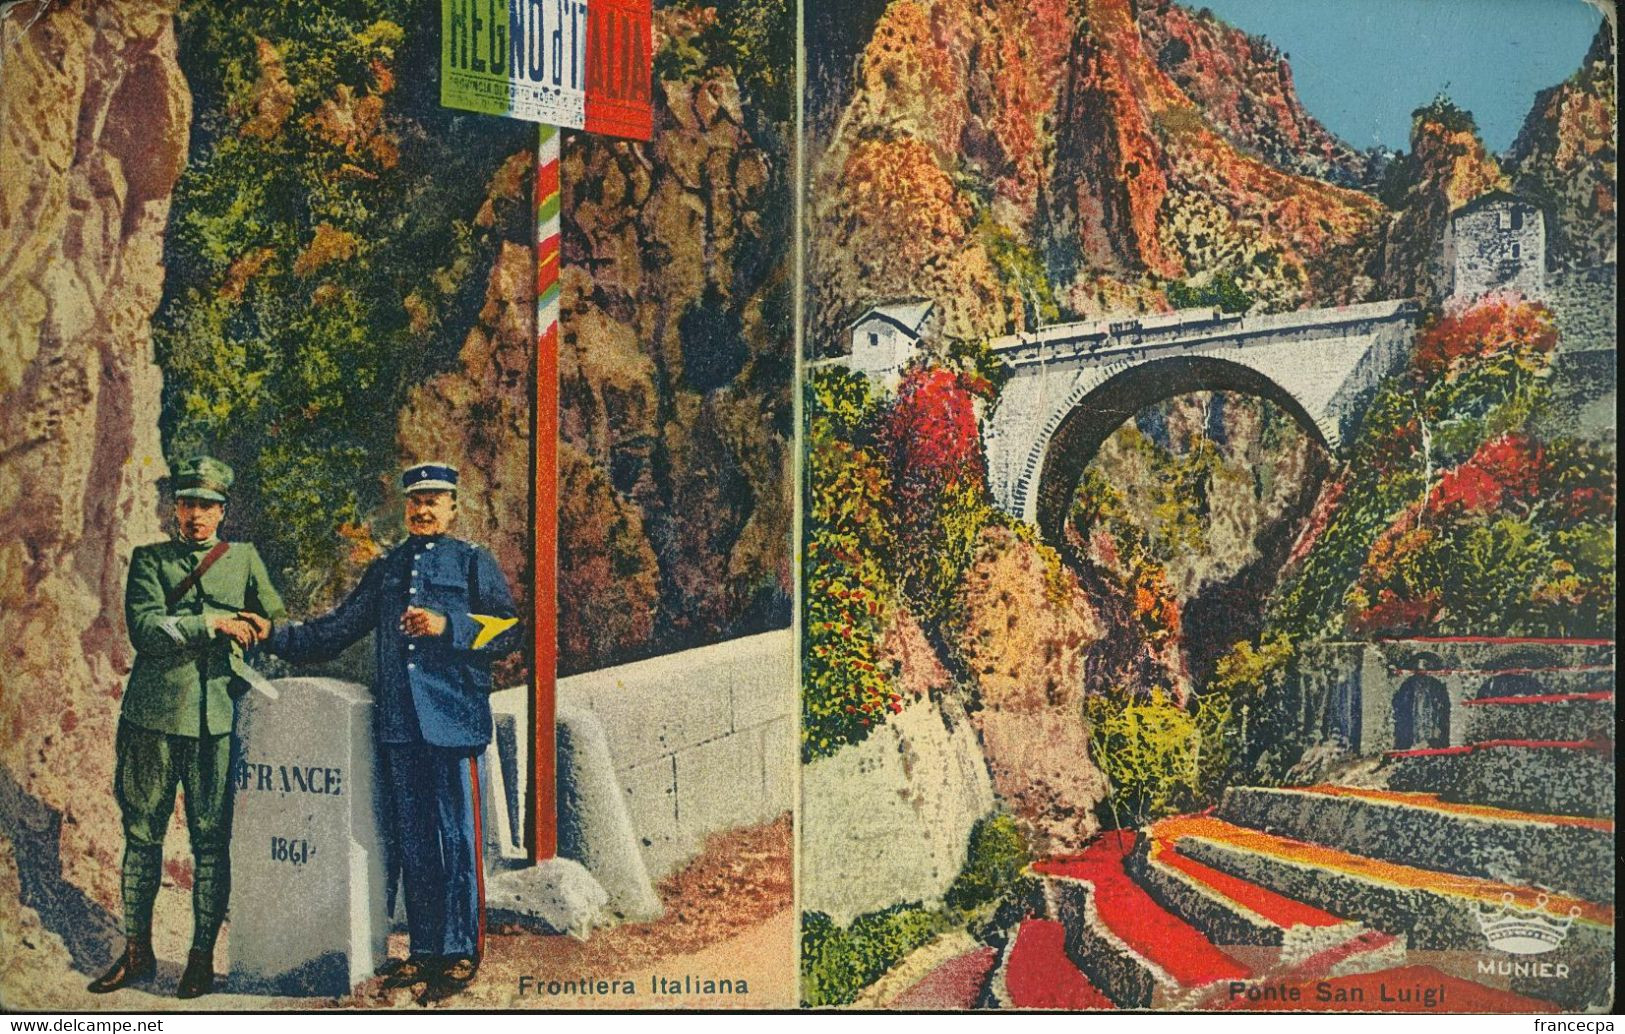 11344 - ALPES MARITIMES - Pont Saint Louis - Frontière Italienne - Douane